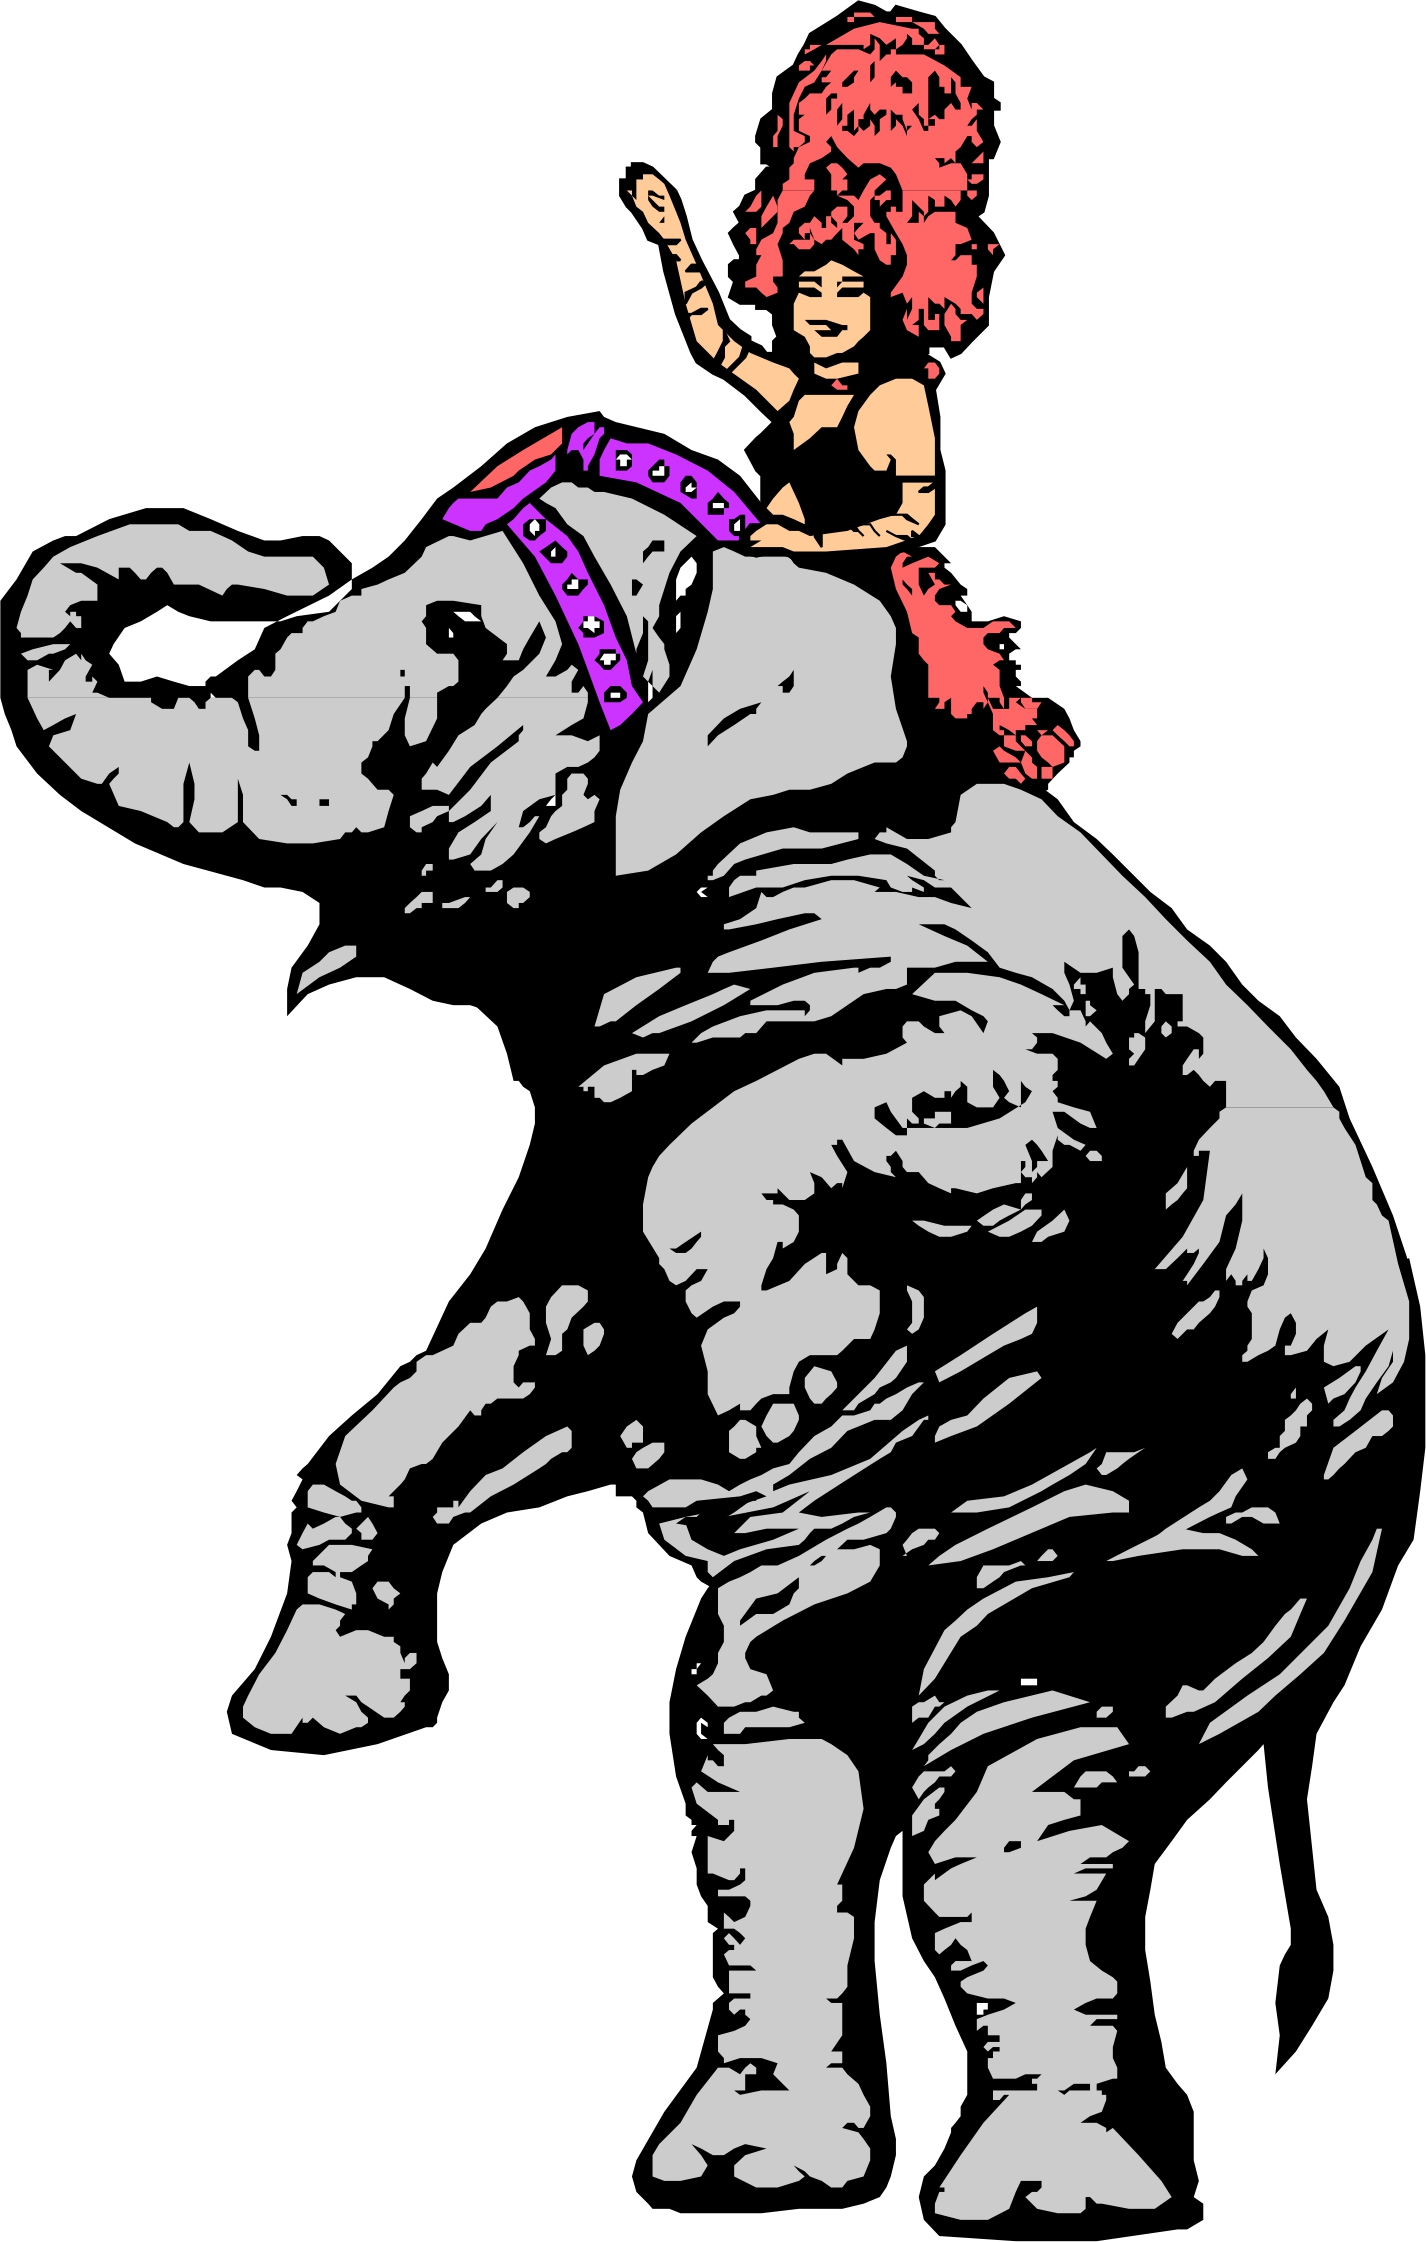 Cartoon Circus Elephant - ClipArt Best